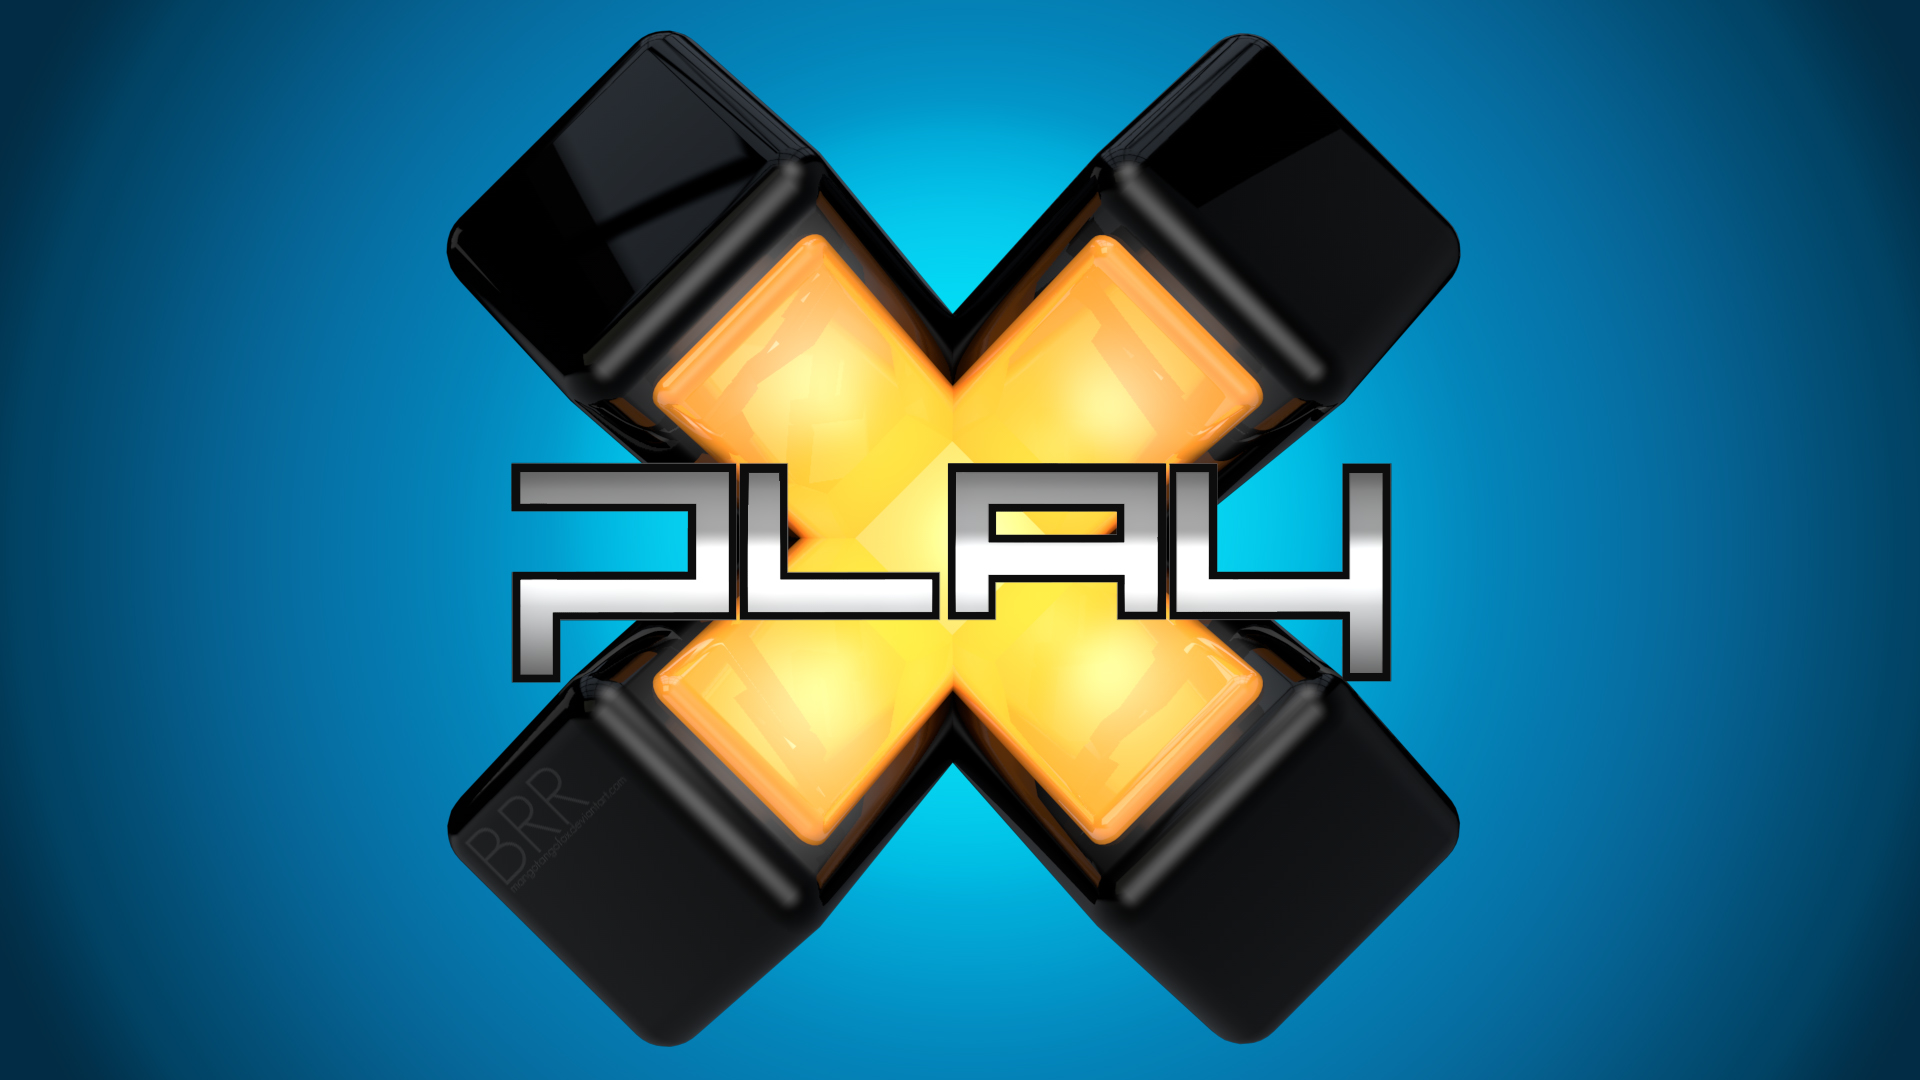 X-Play Logo wallpaper > 3d Papel de parede > 3d Fondos 